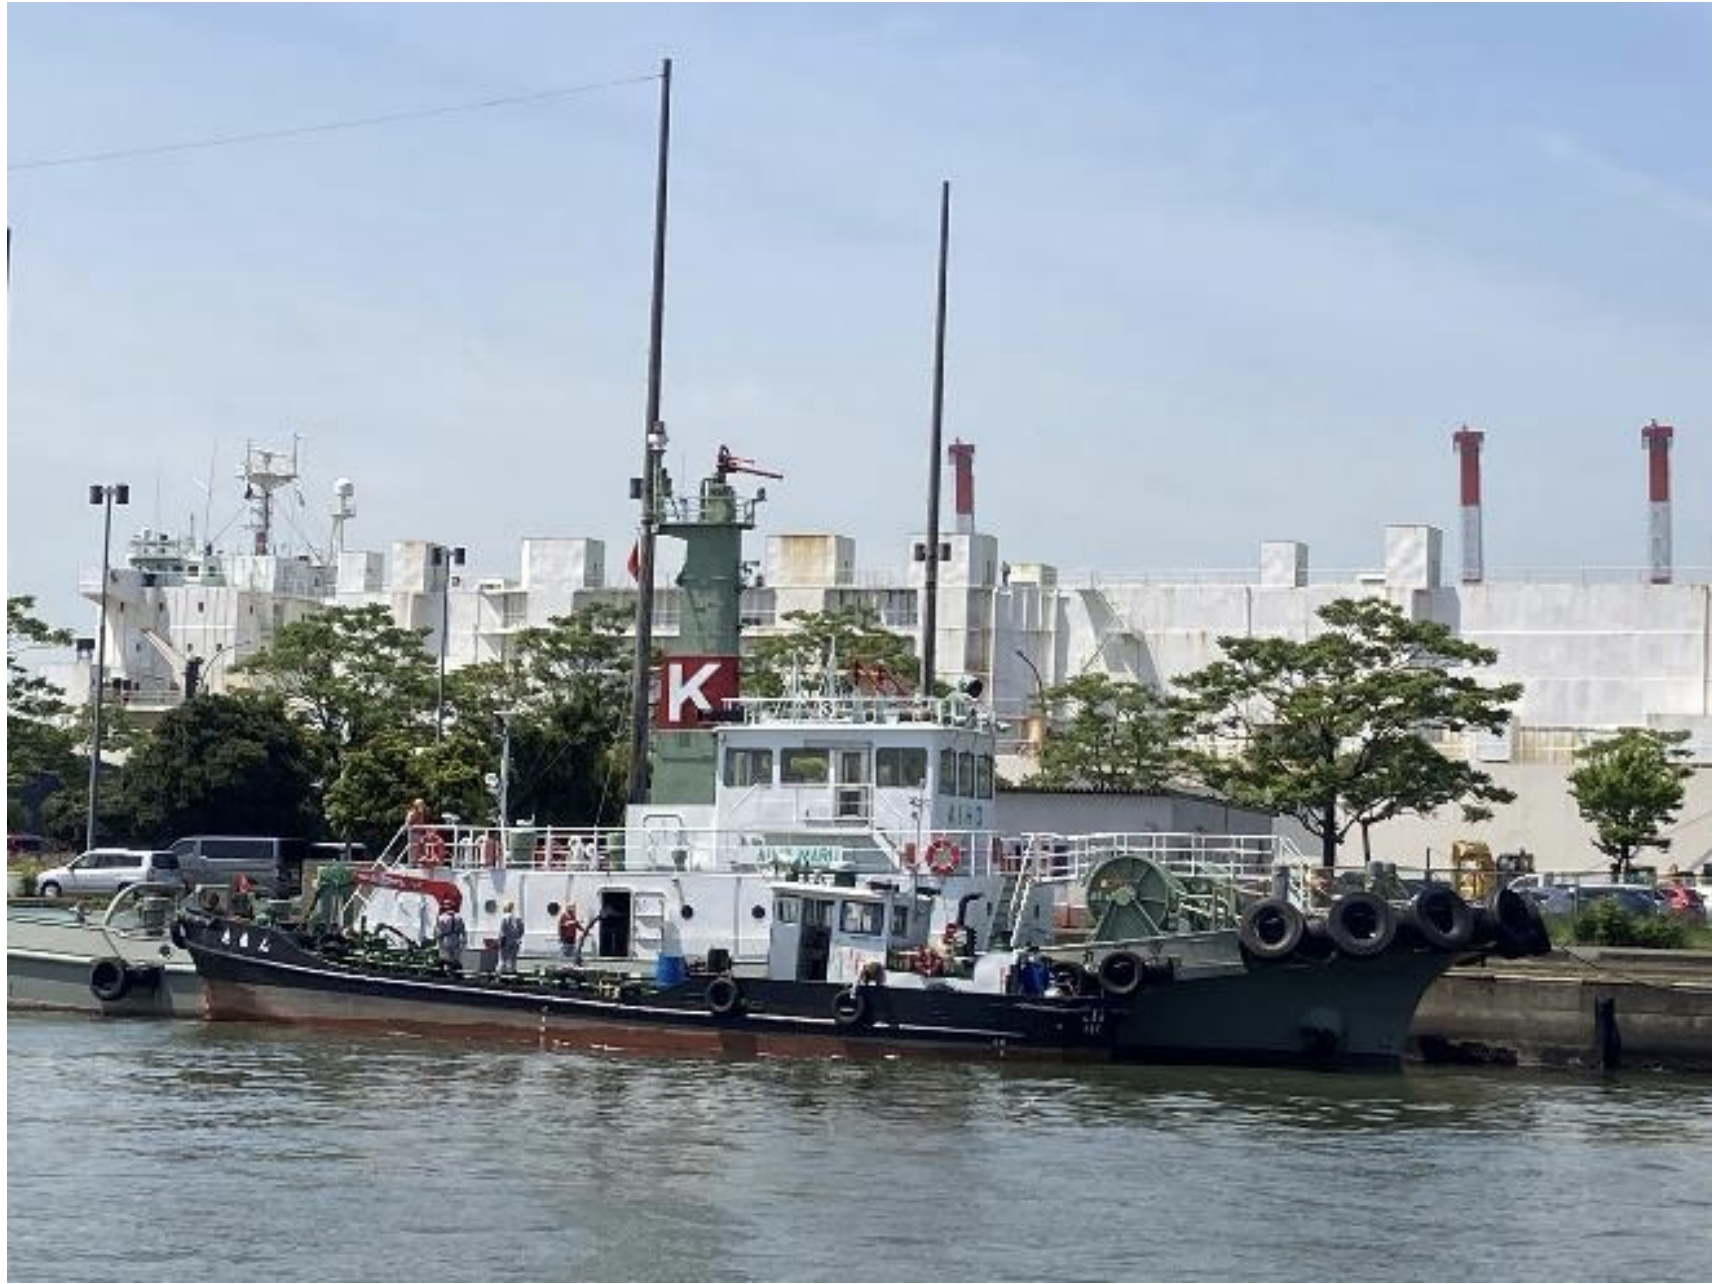 Japan: “K” LINE conducts biodiesel bunker trial on tugboat “Aihomaru”